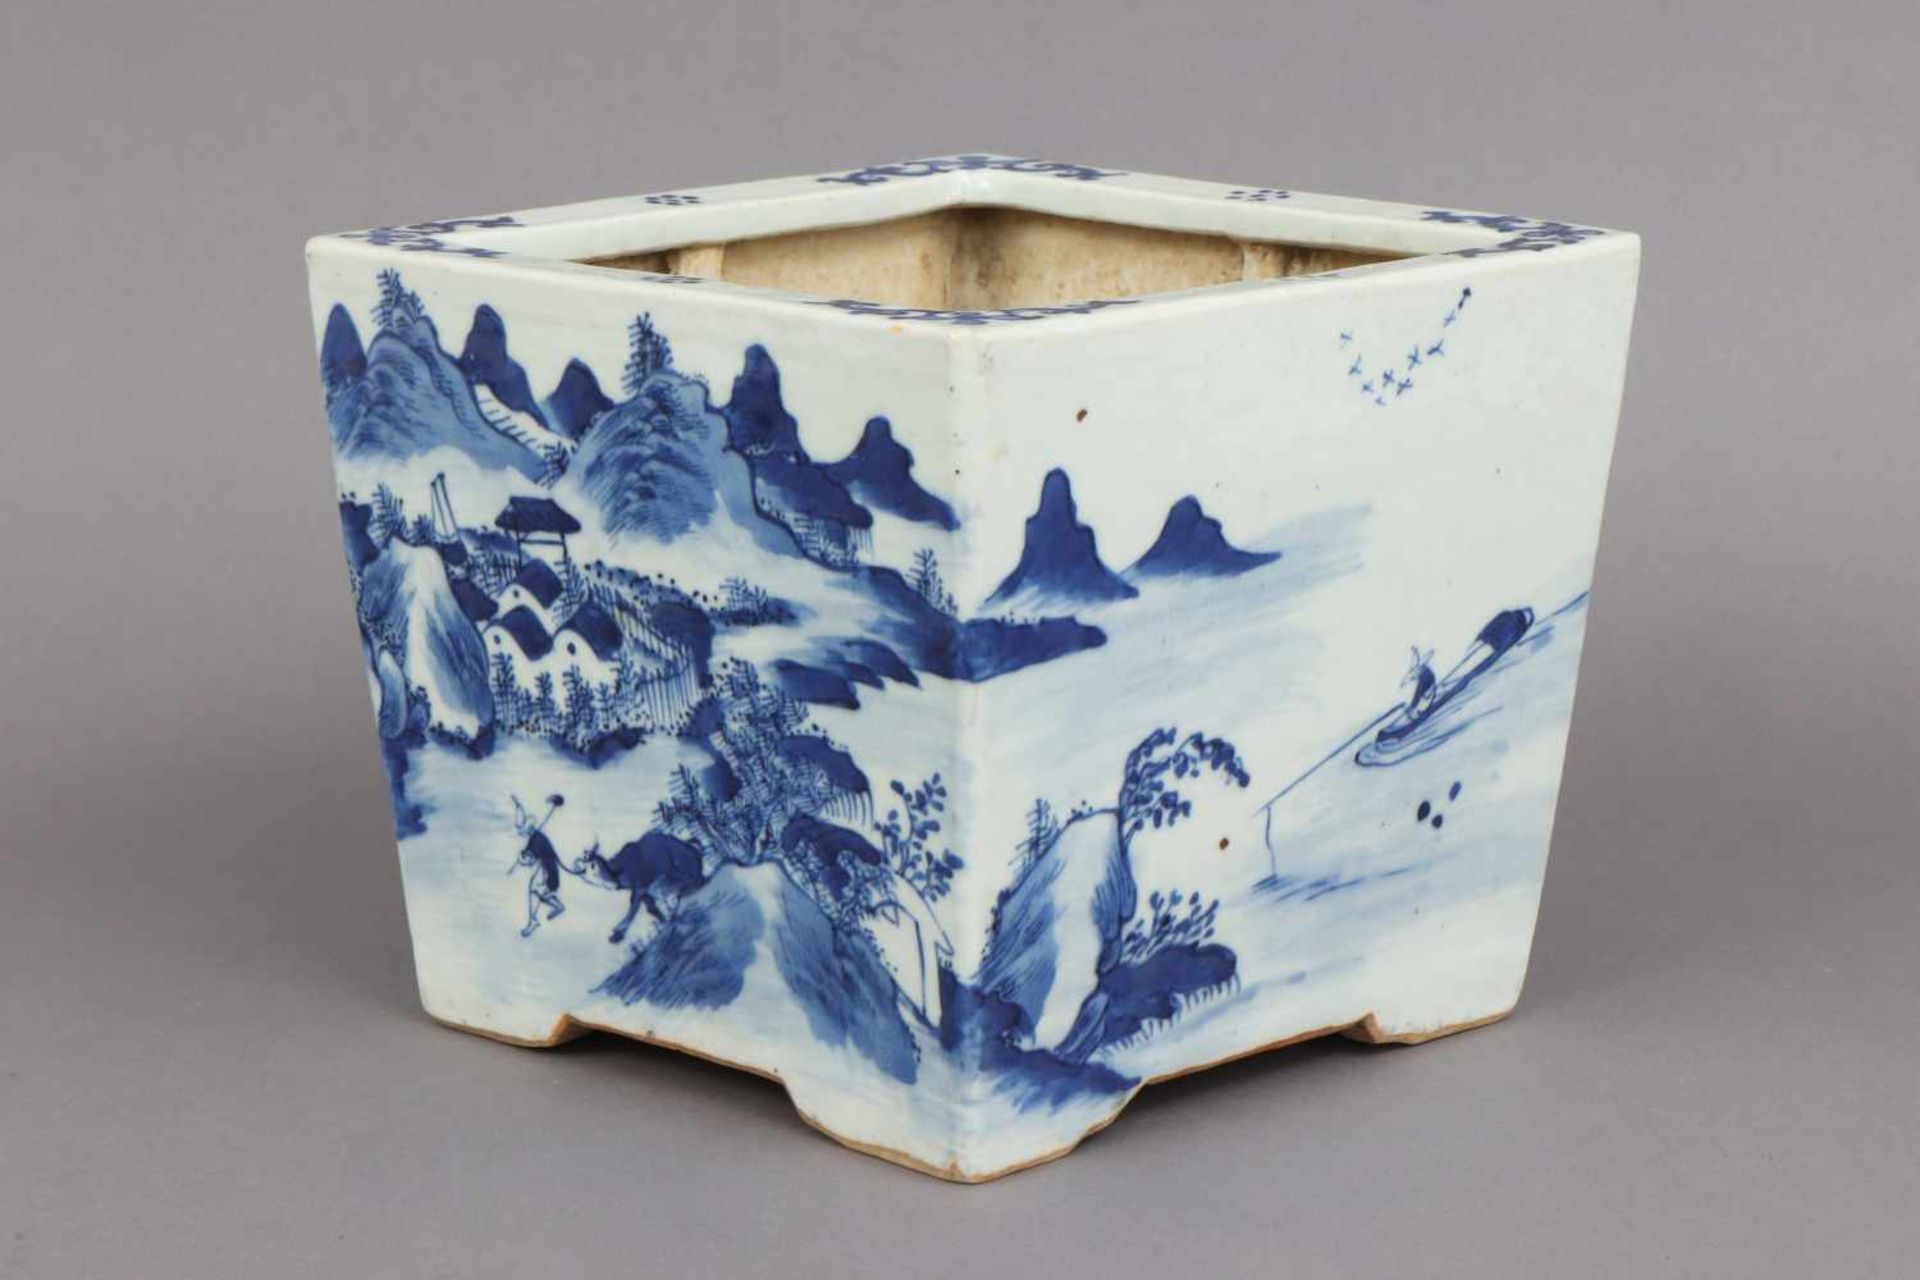 Chinesische Bonsai-Pflanzschale im Stile MingPorzellan, wohl 19. Jhdt., eckiger Korpus, allseitig - Bild 2 aus 4